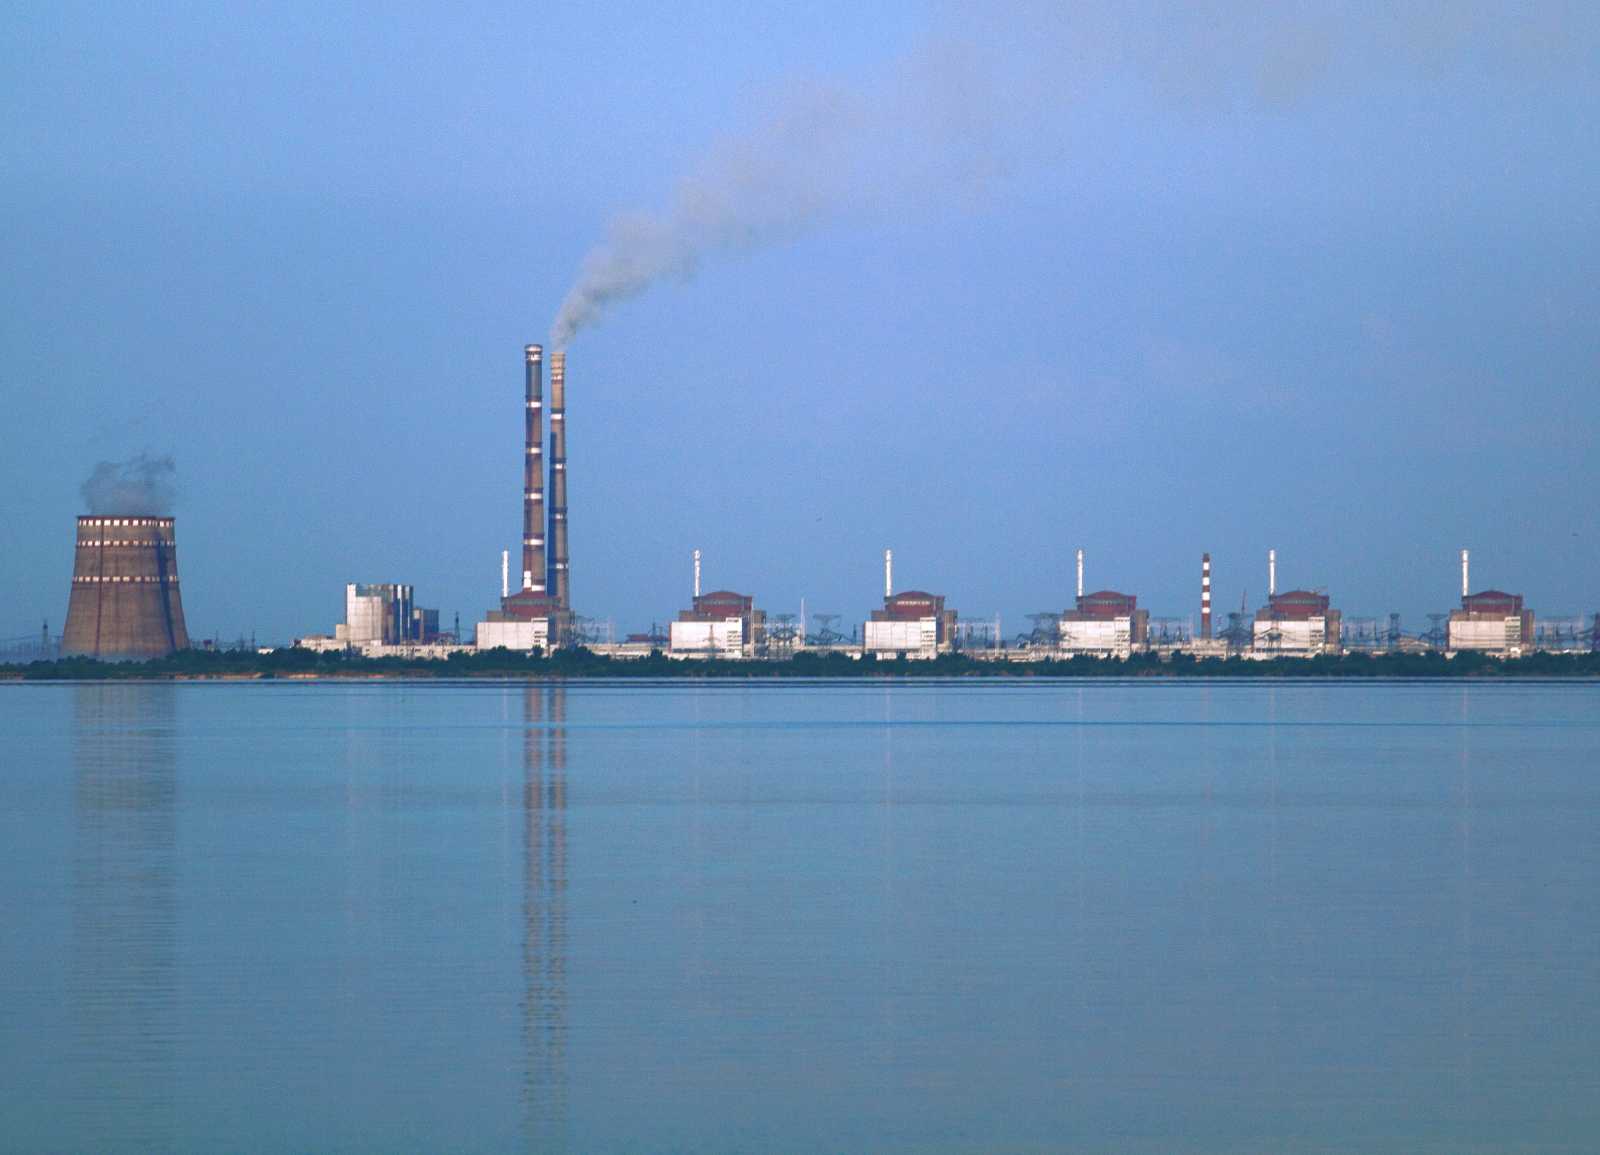 A zaporizsjei atomerőmű | Fotó forrása: Wikipédia